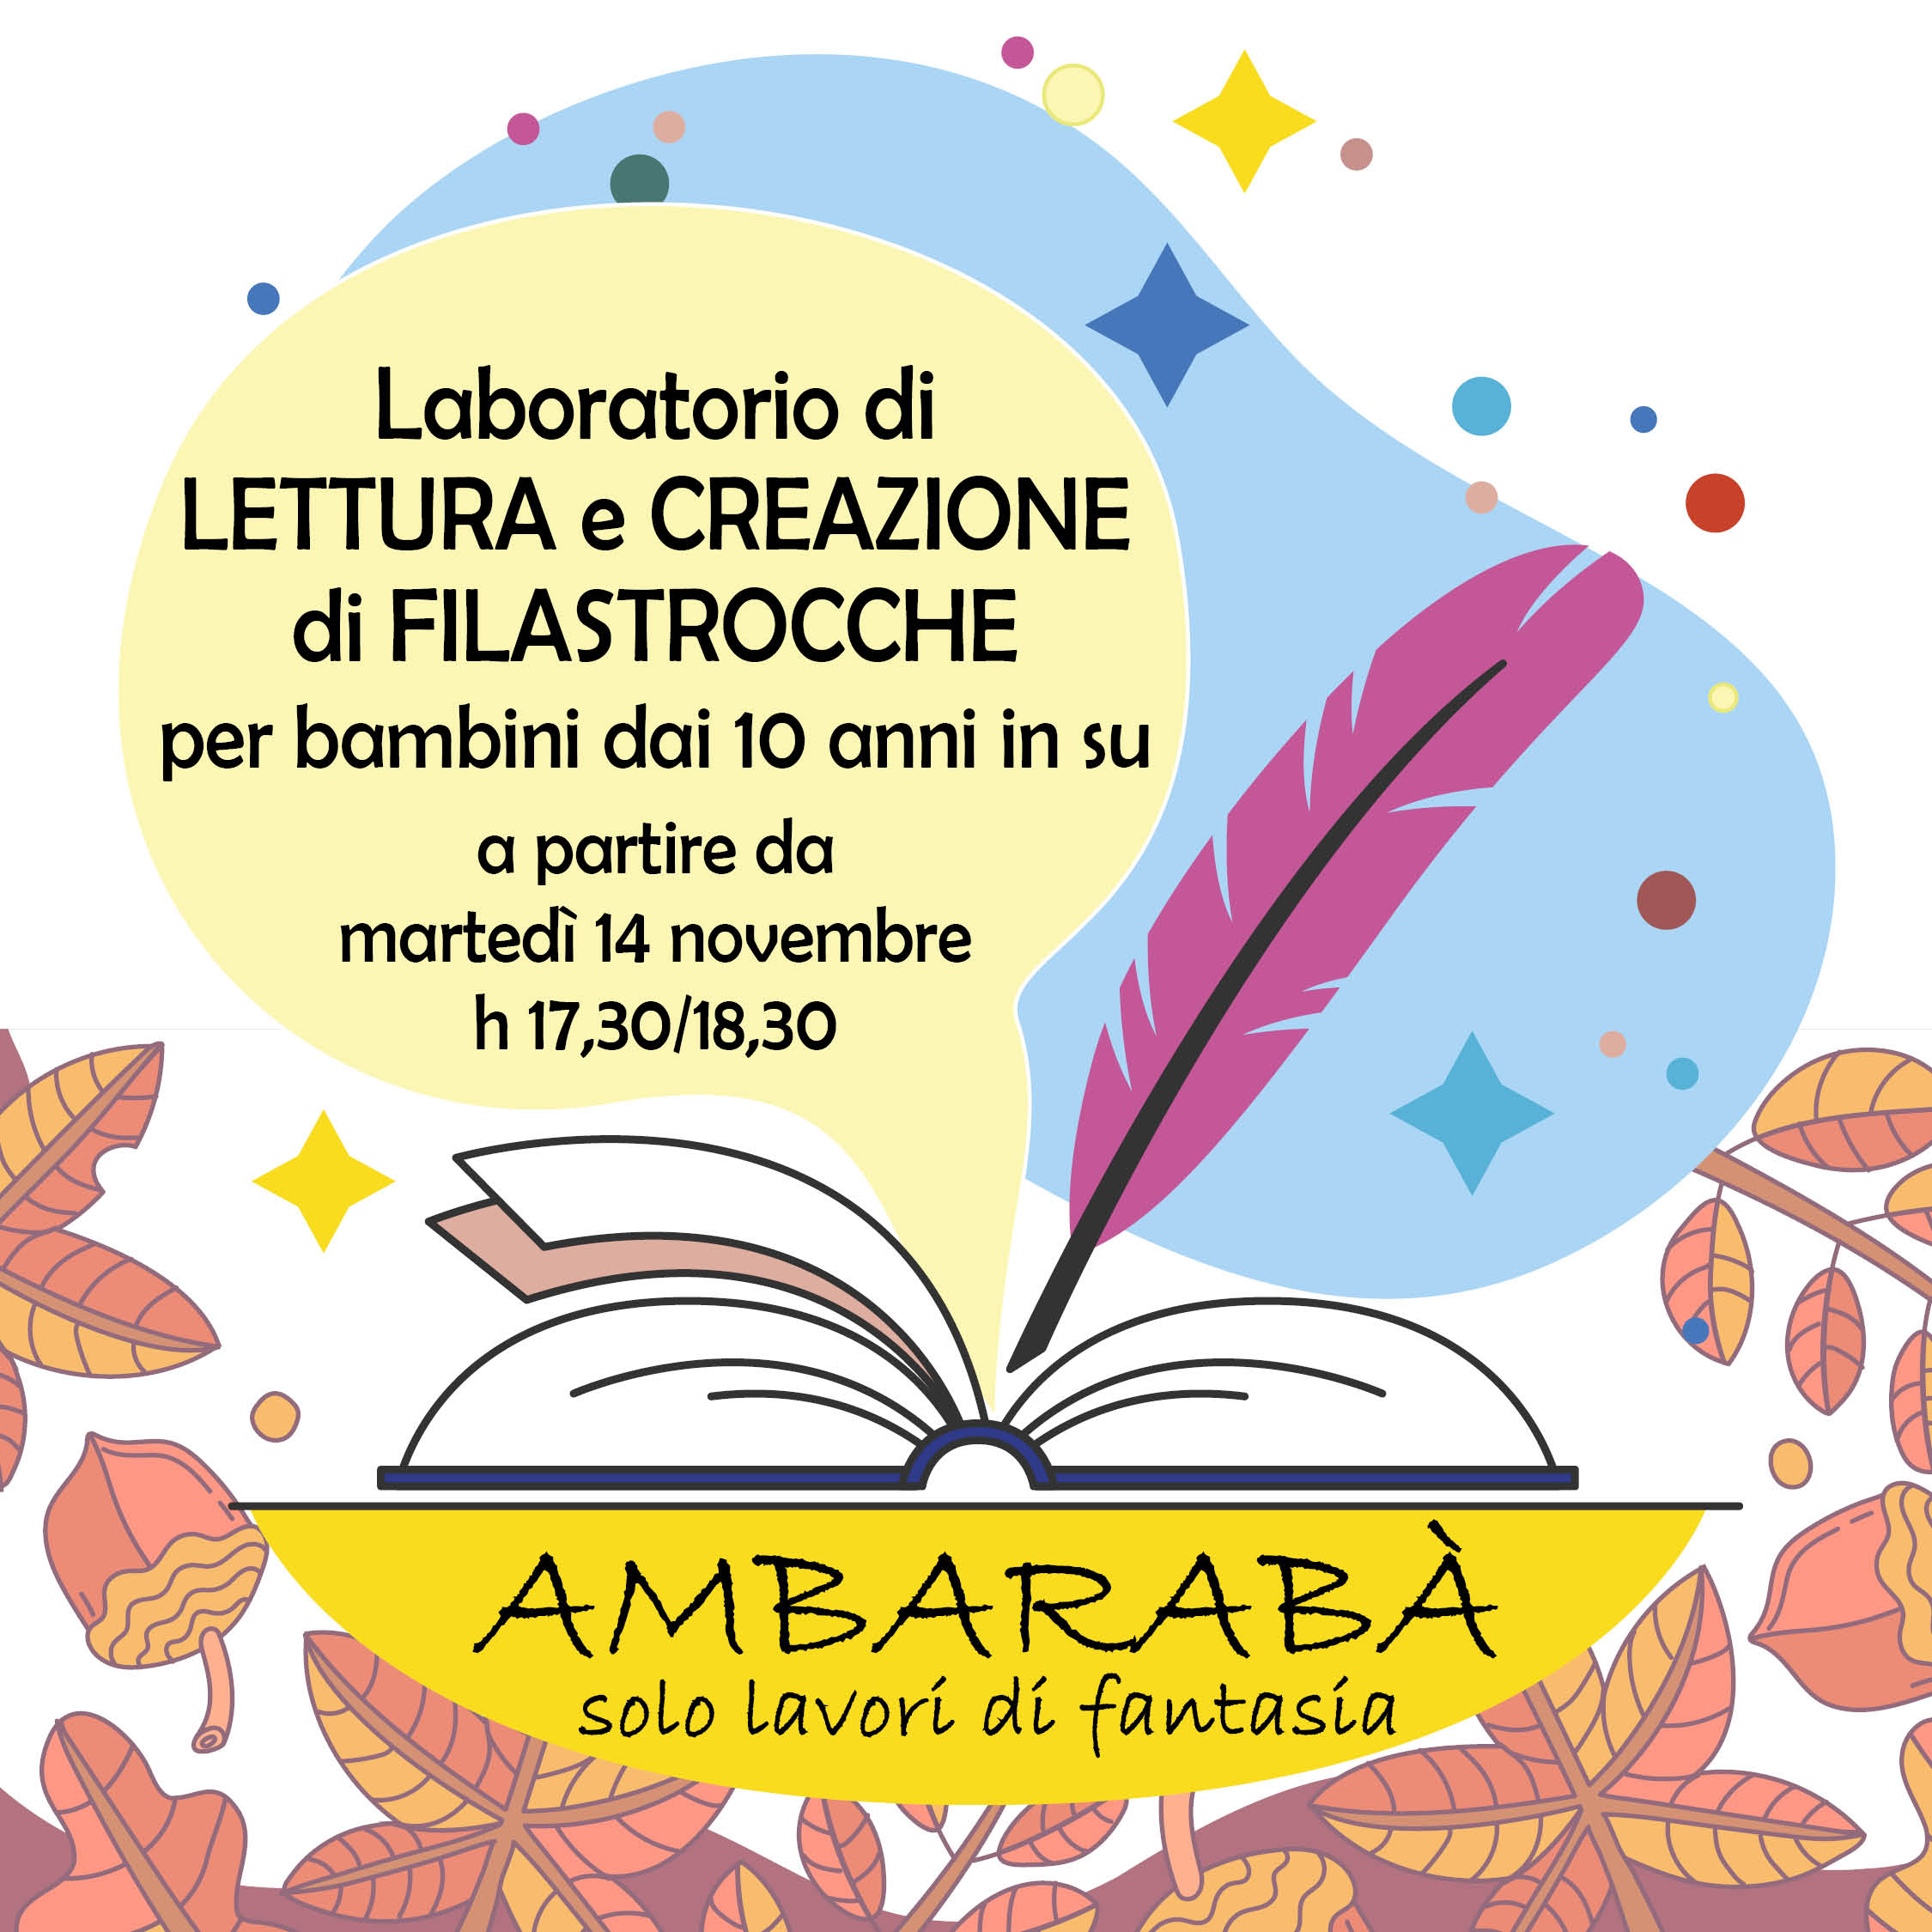 "Ambarabà" - Laboratorio di lettura e creazione di filastrocche